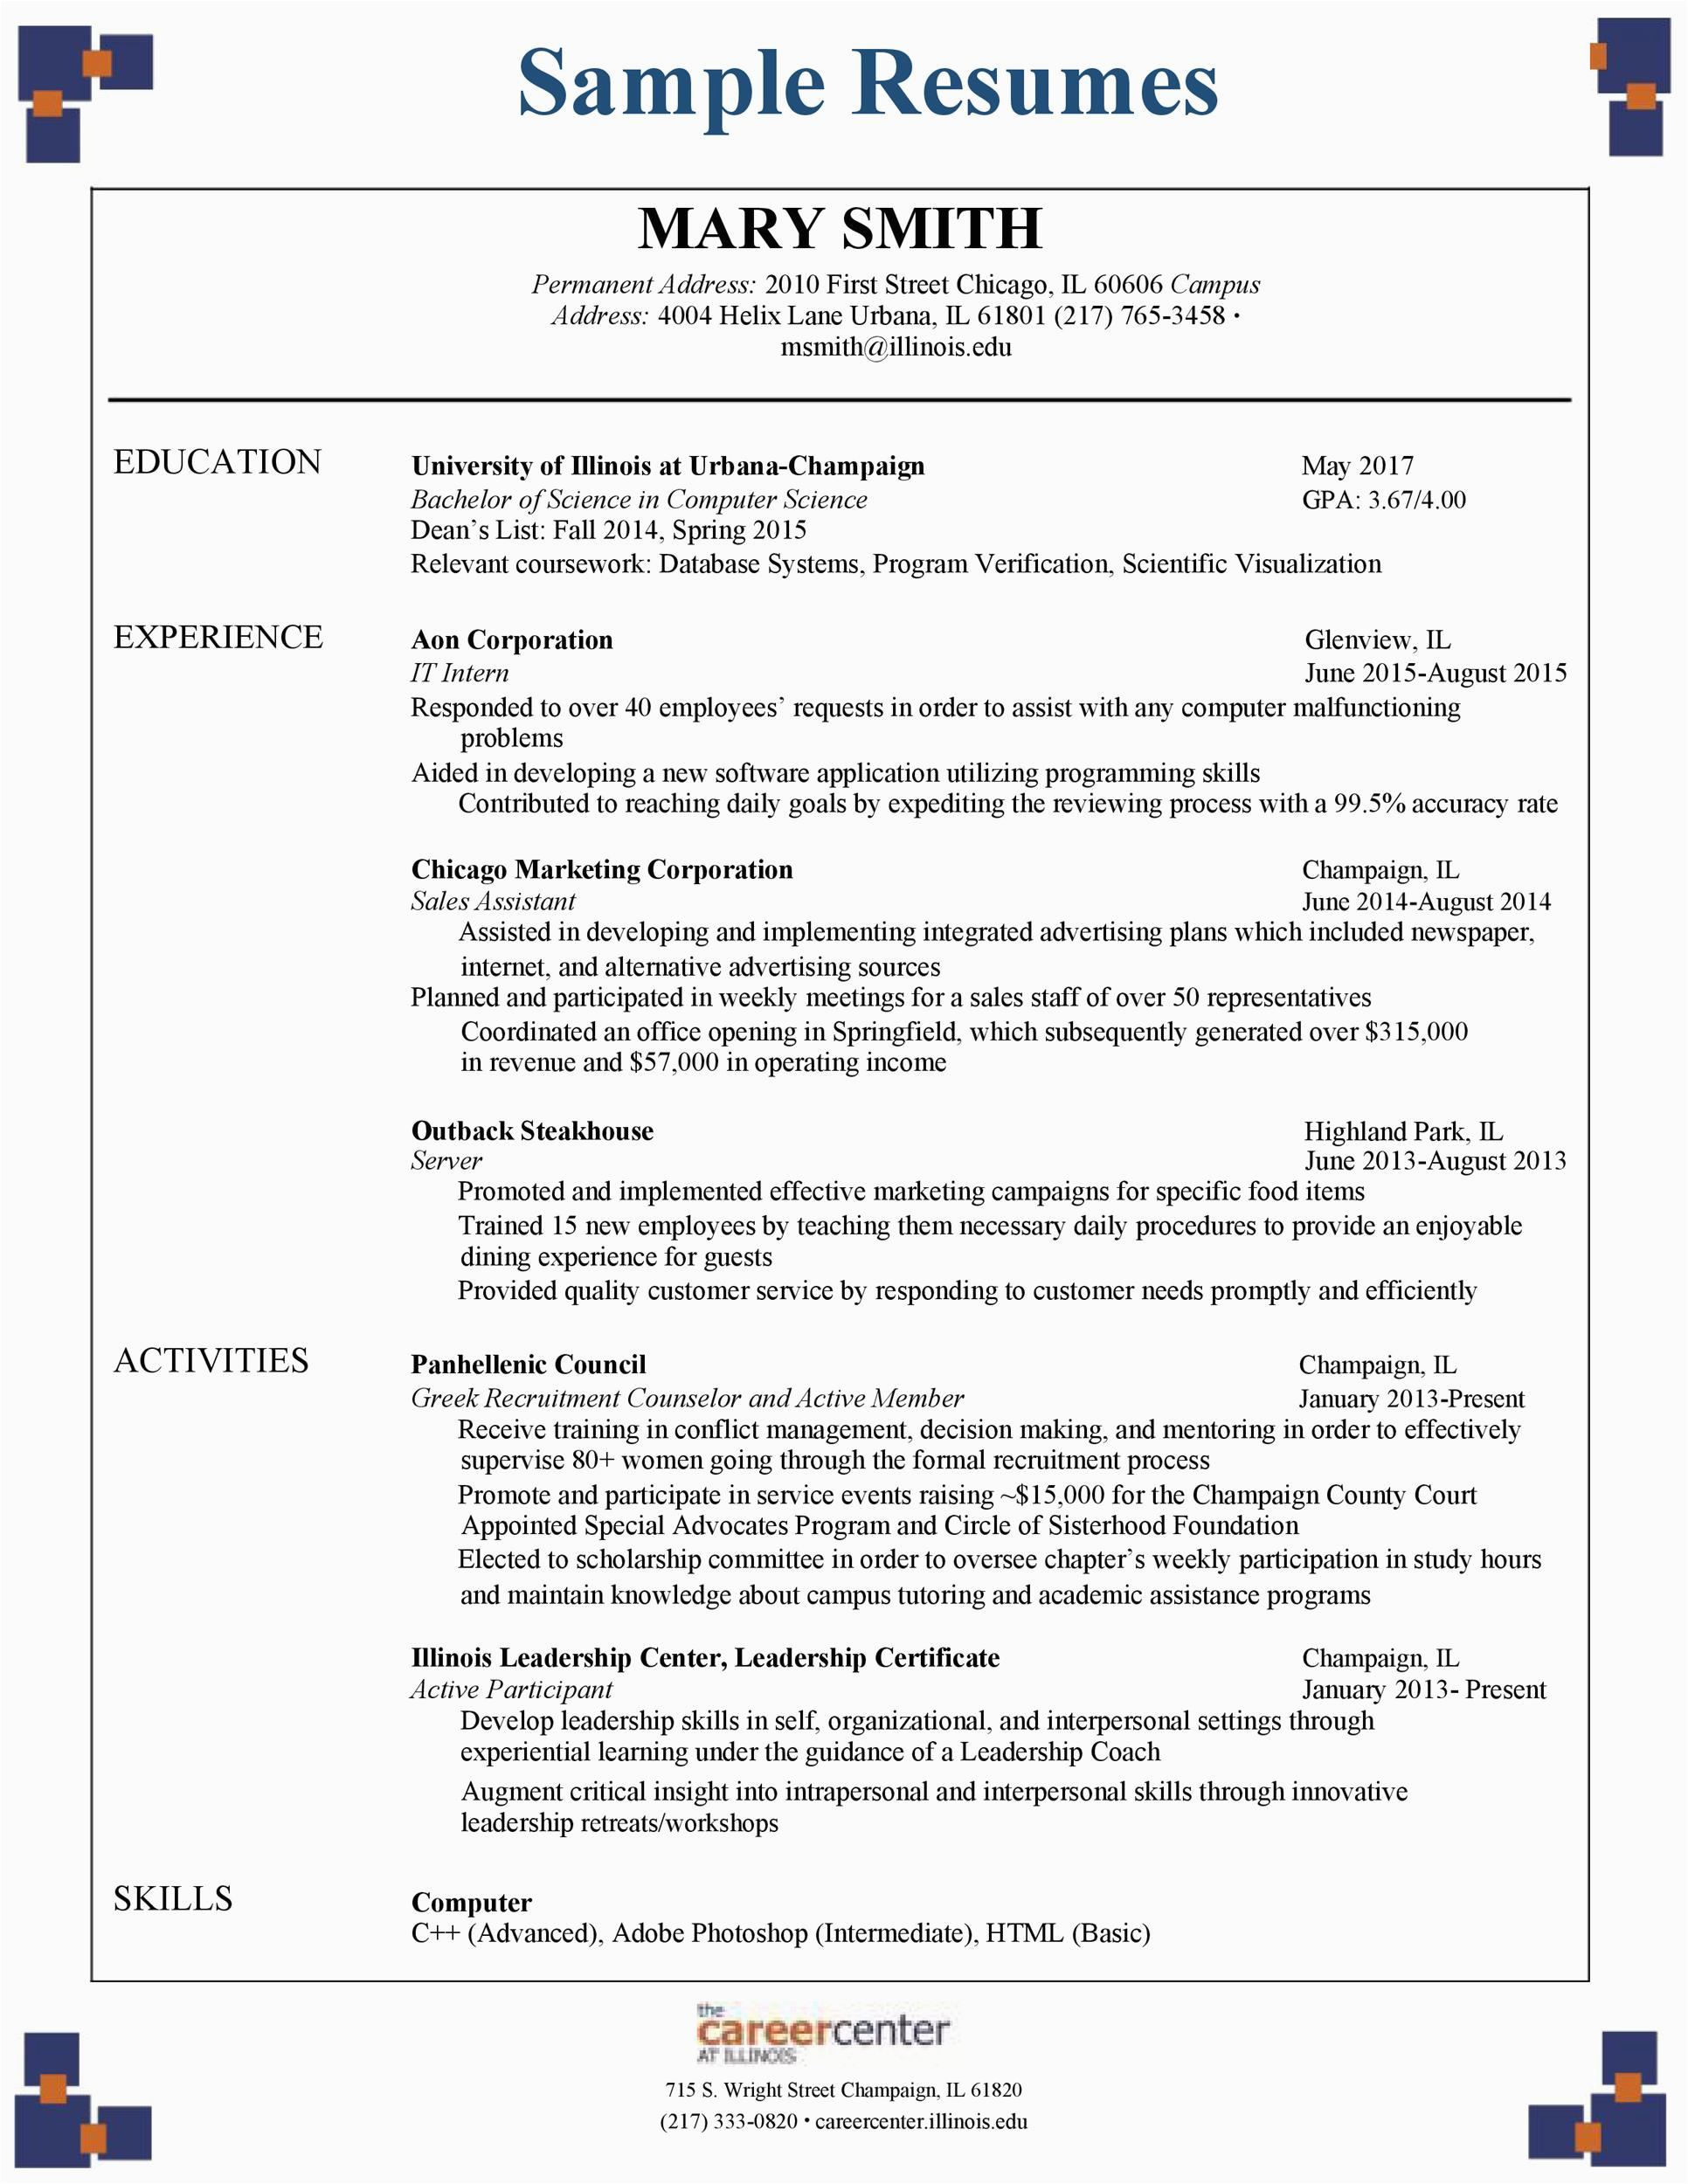 Sample Of Resume for Applying University Undergraduate Students Sample Resume for University Application 15